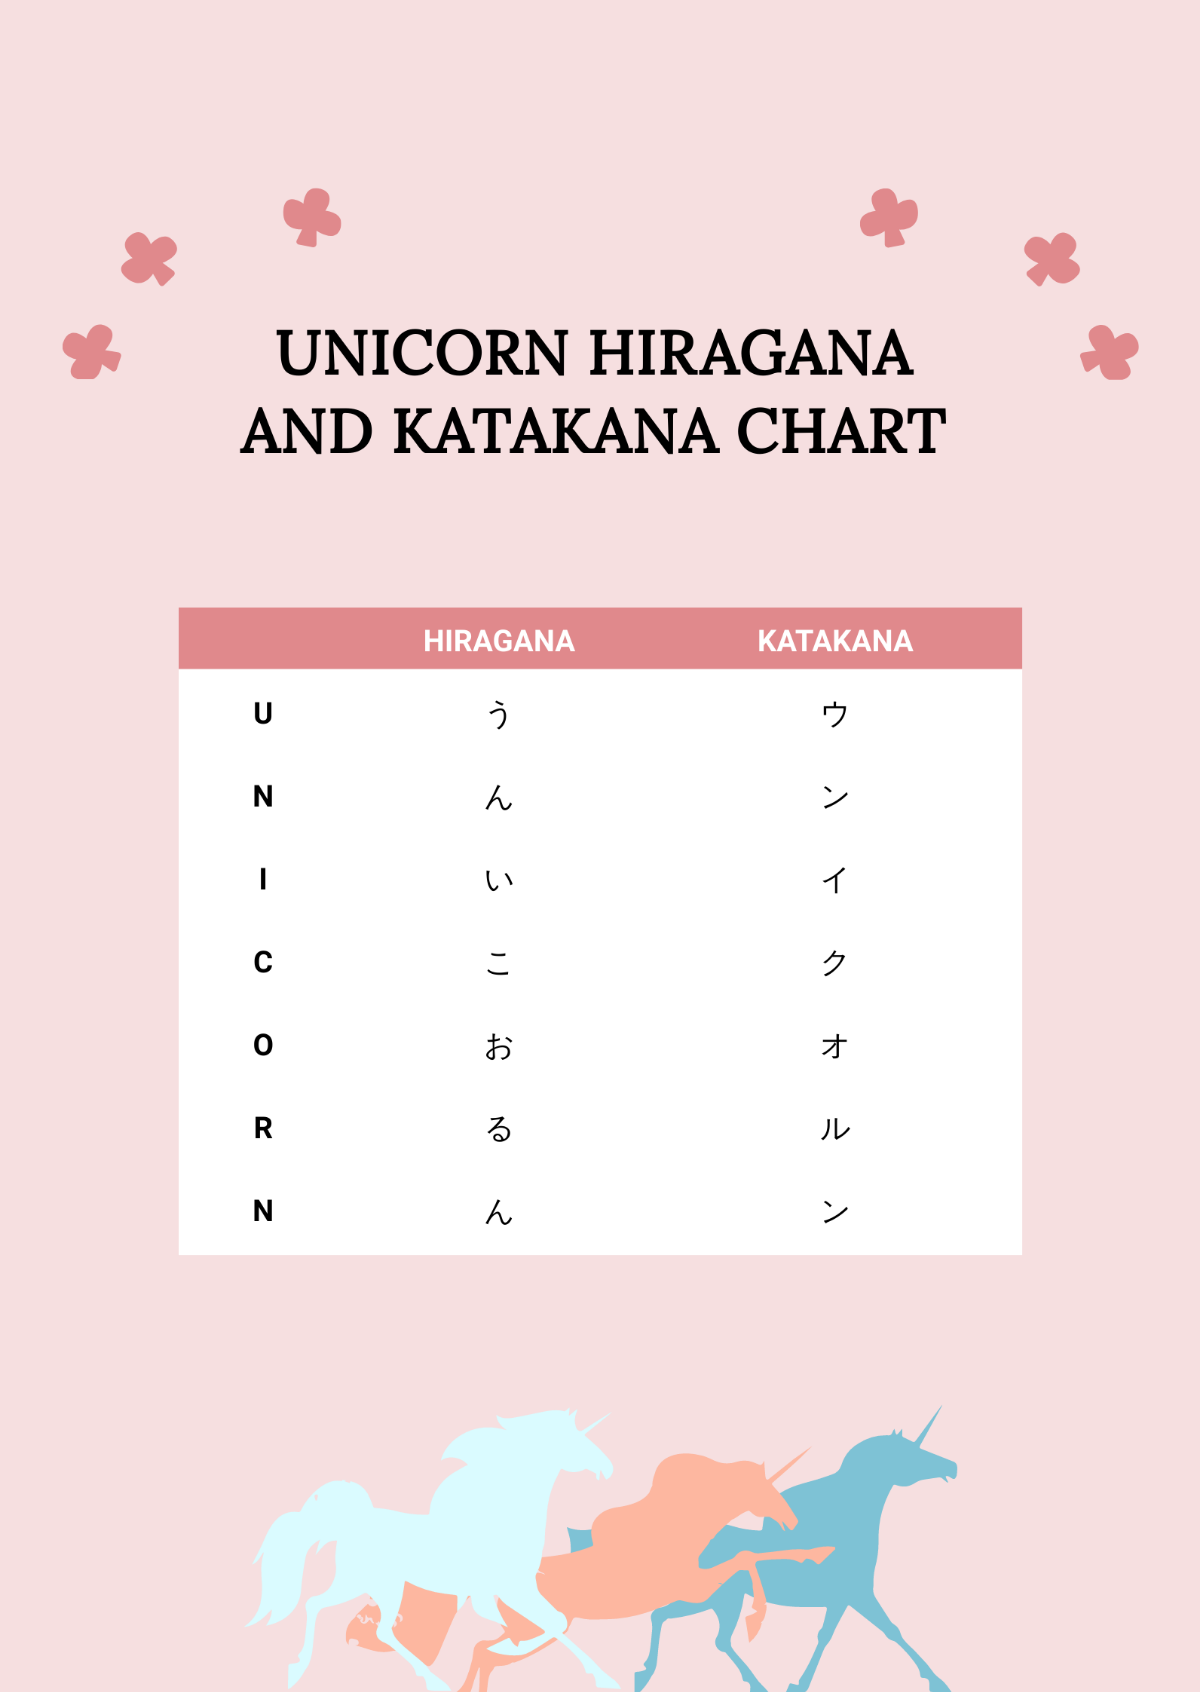 Free Unicorn Hiragana And Katakana Chart Template